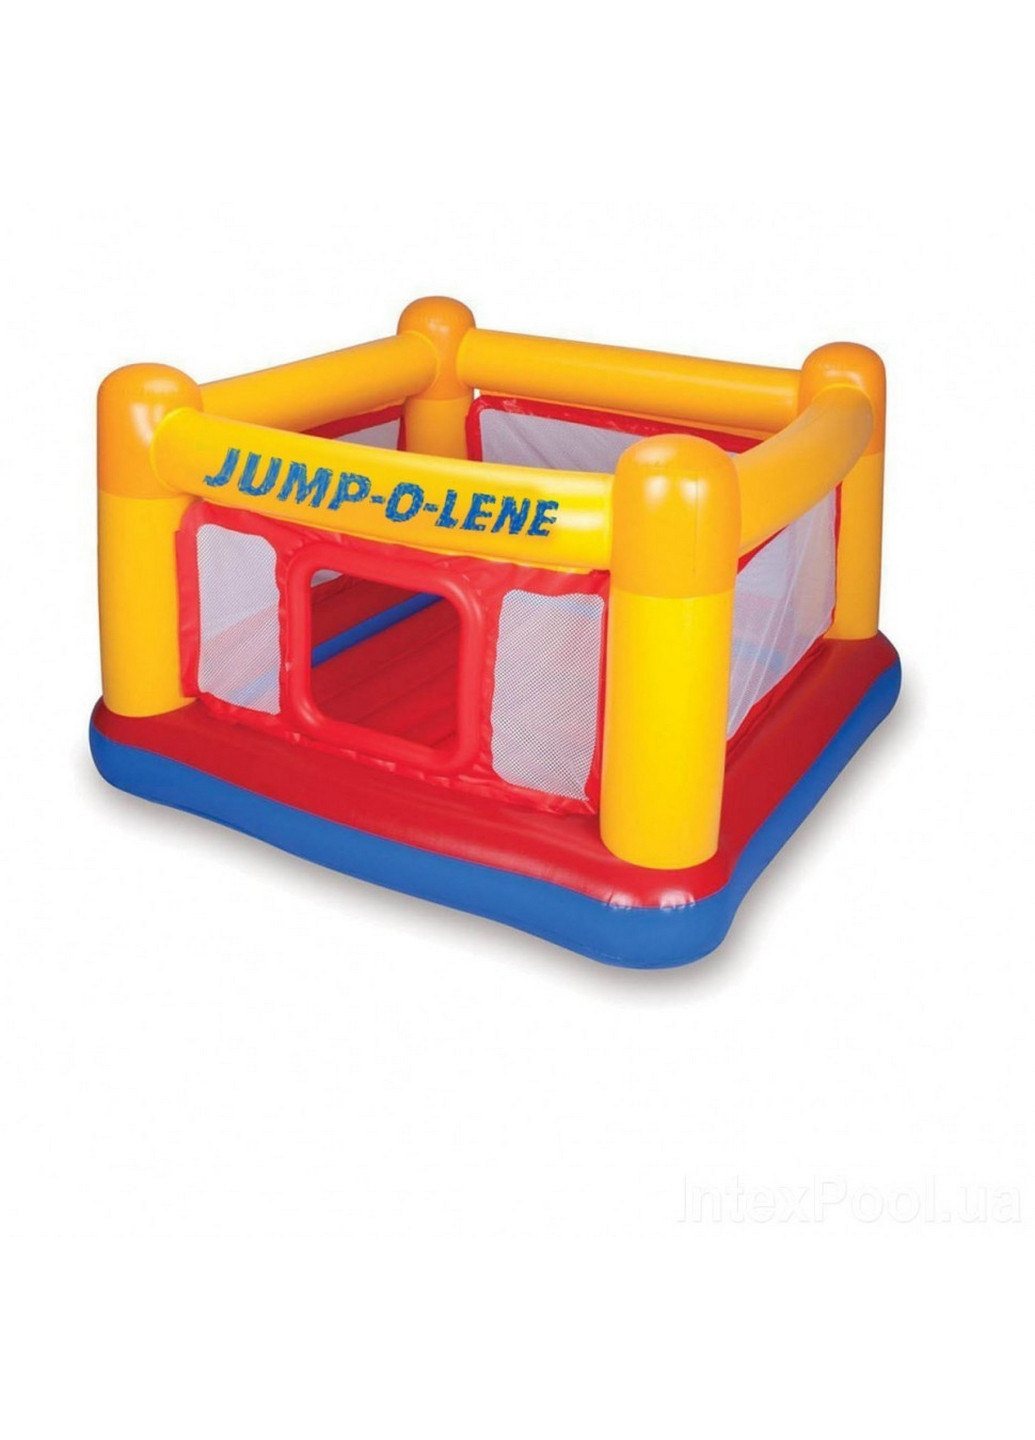 Детский надувной батут «Jump-O-Lene» 174x174x112 см Intex (260496173)